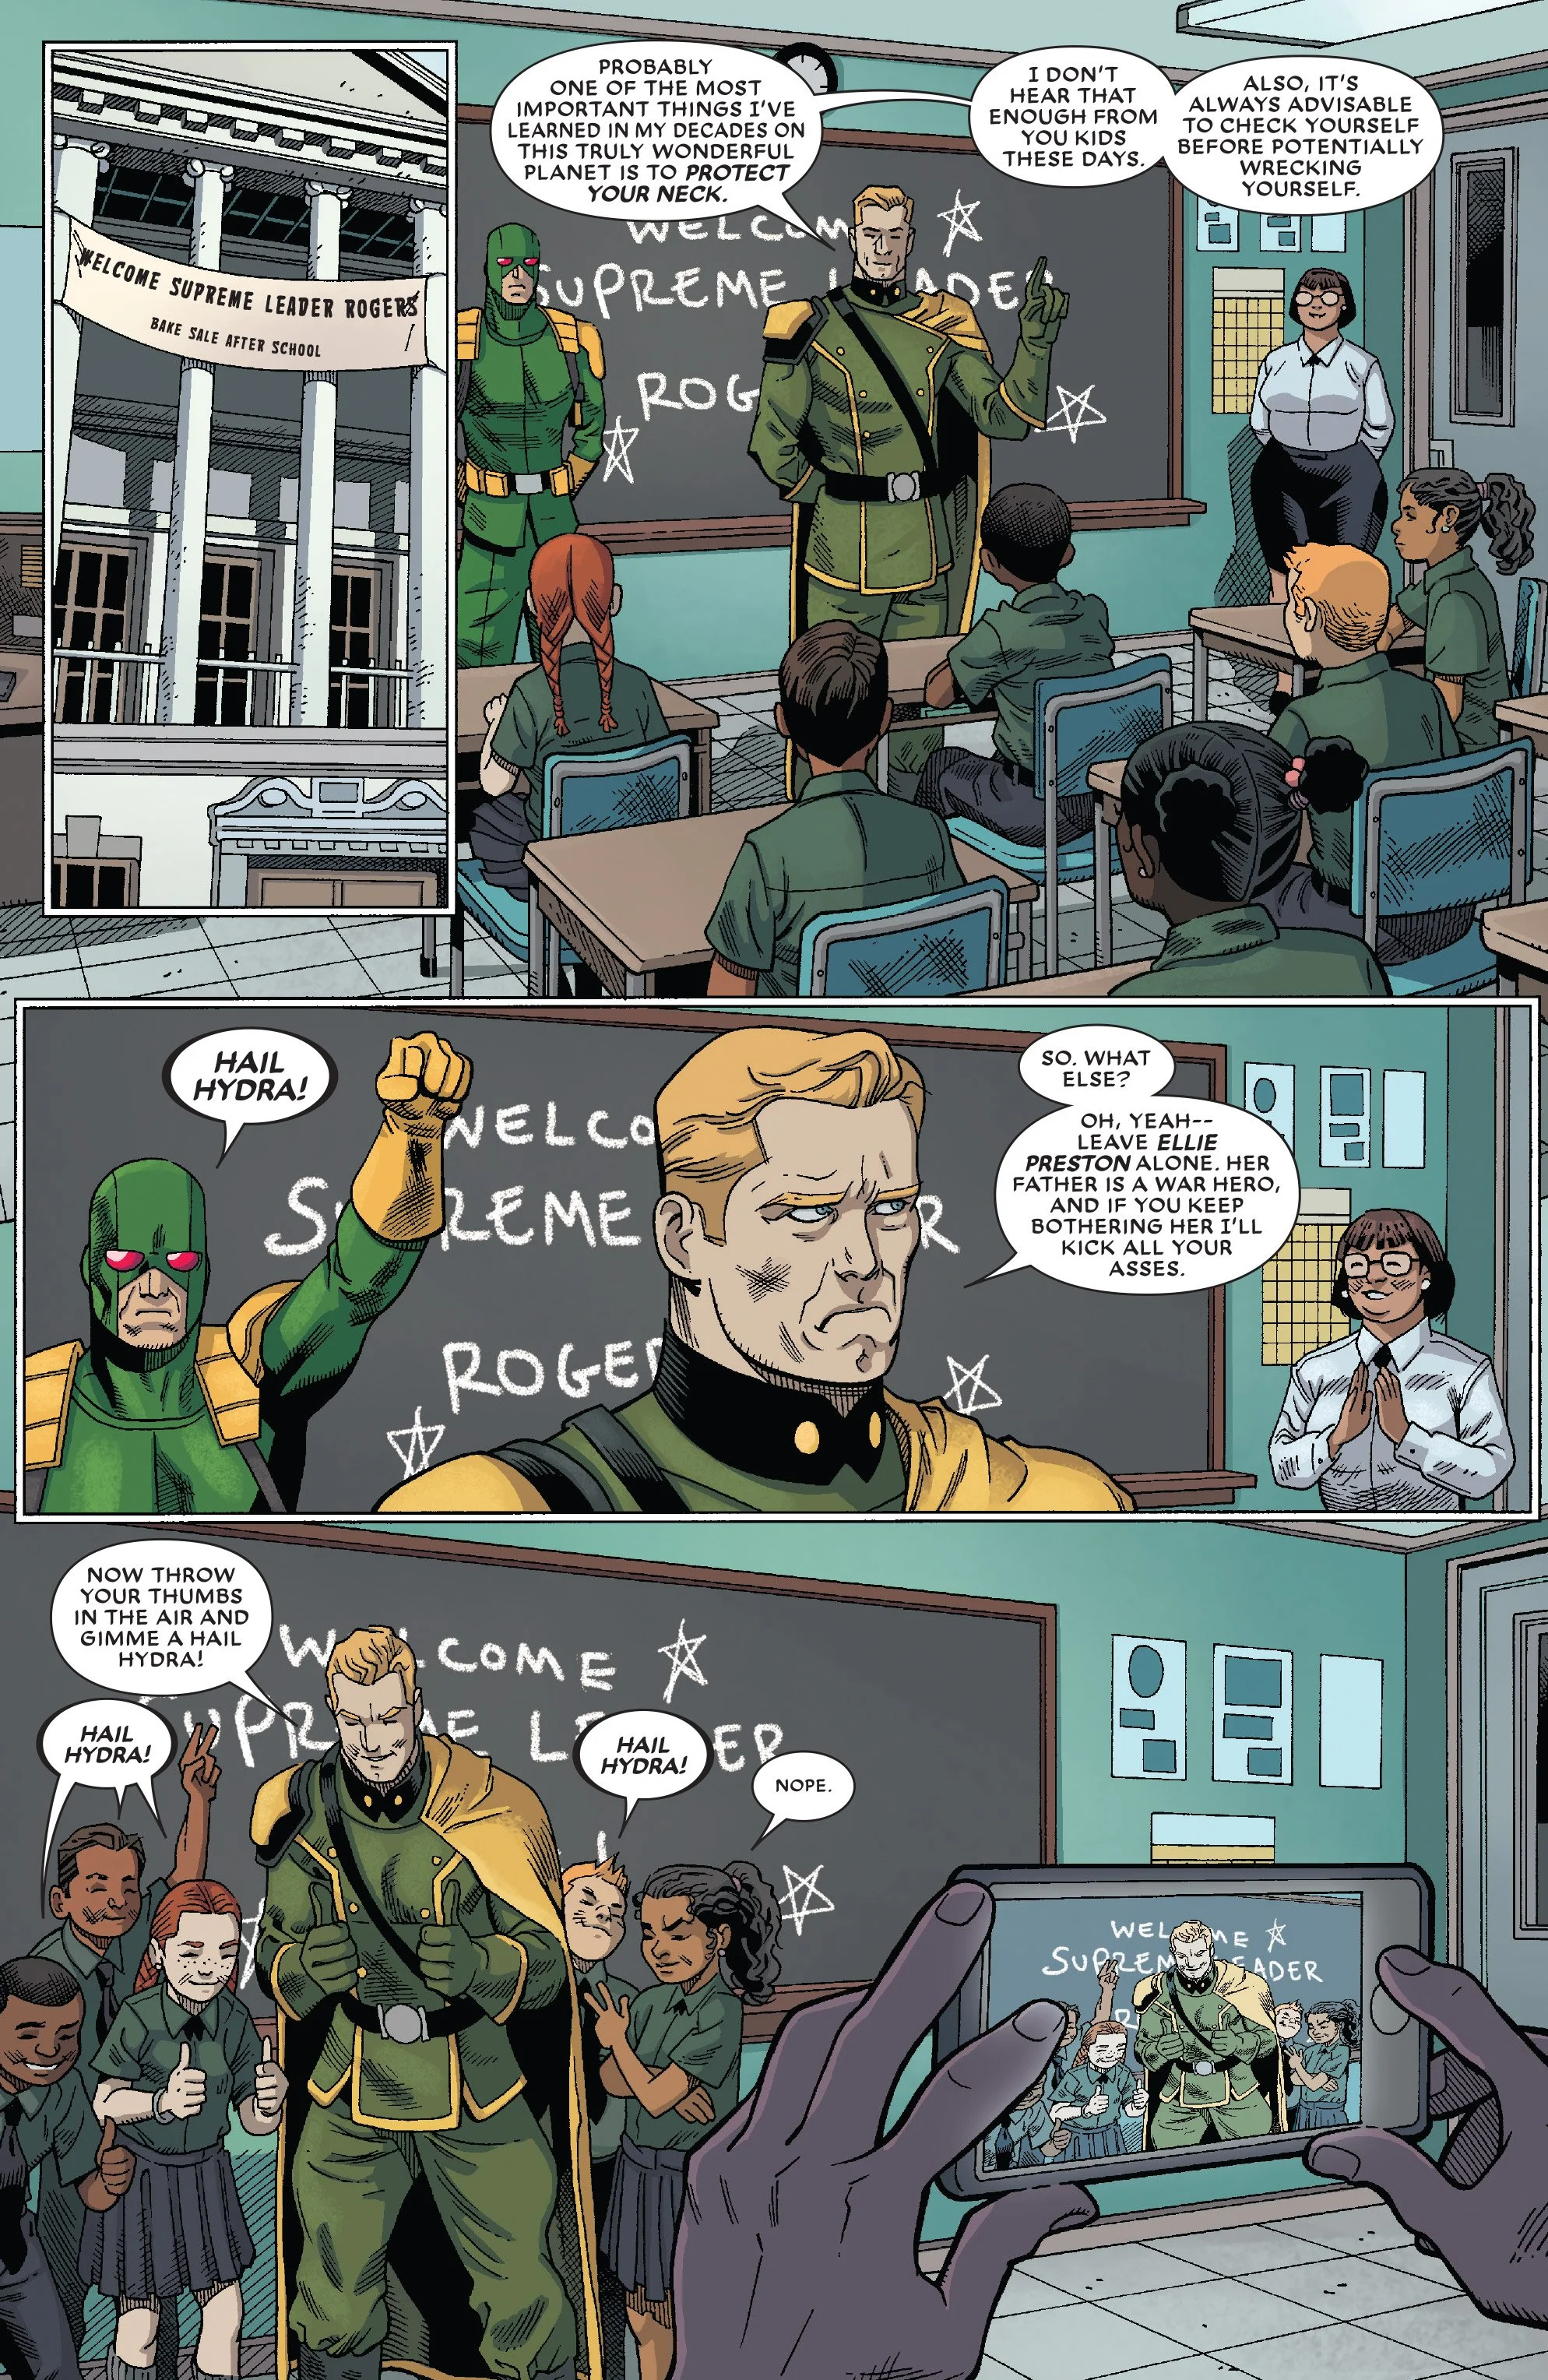 Комикс про Дэдпула подтверждает — теперь у Marvel два Капитана Америка - фото 1